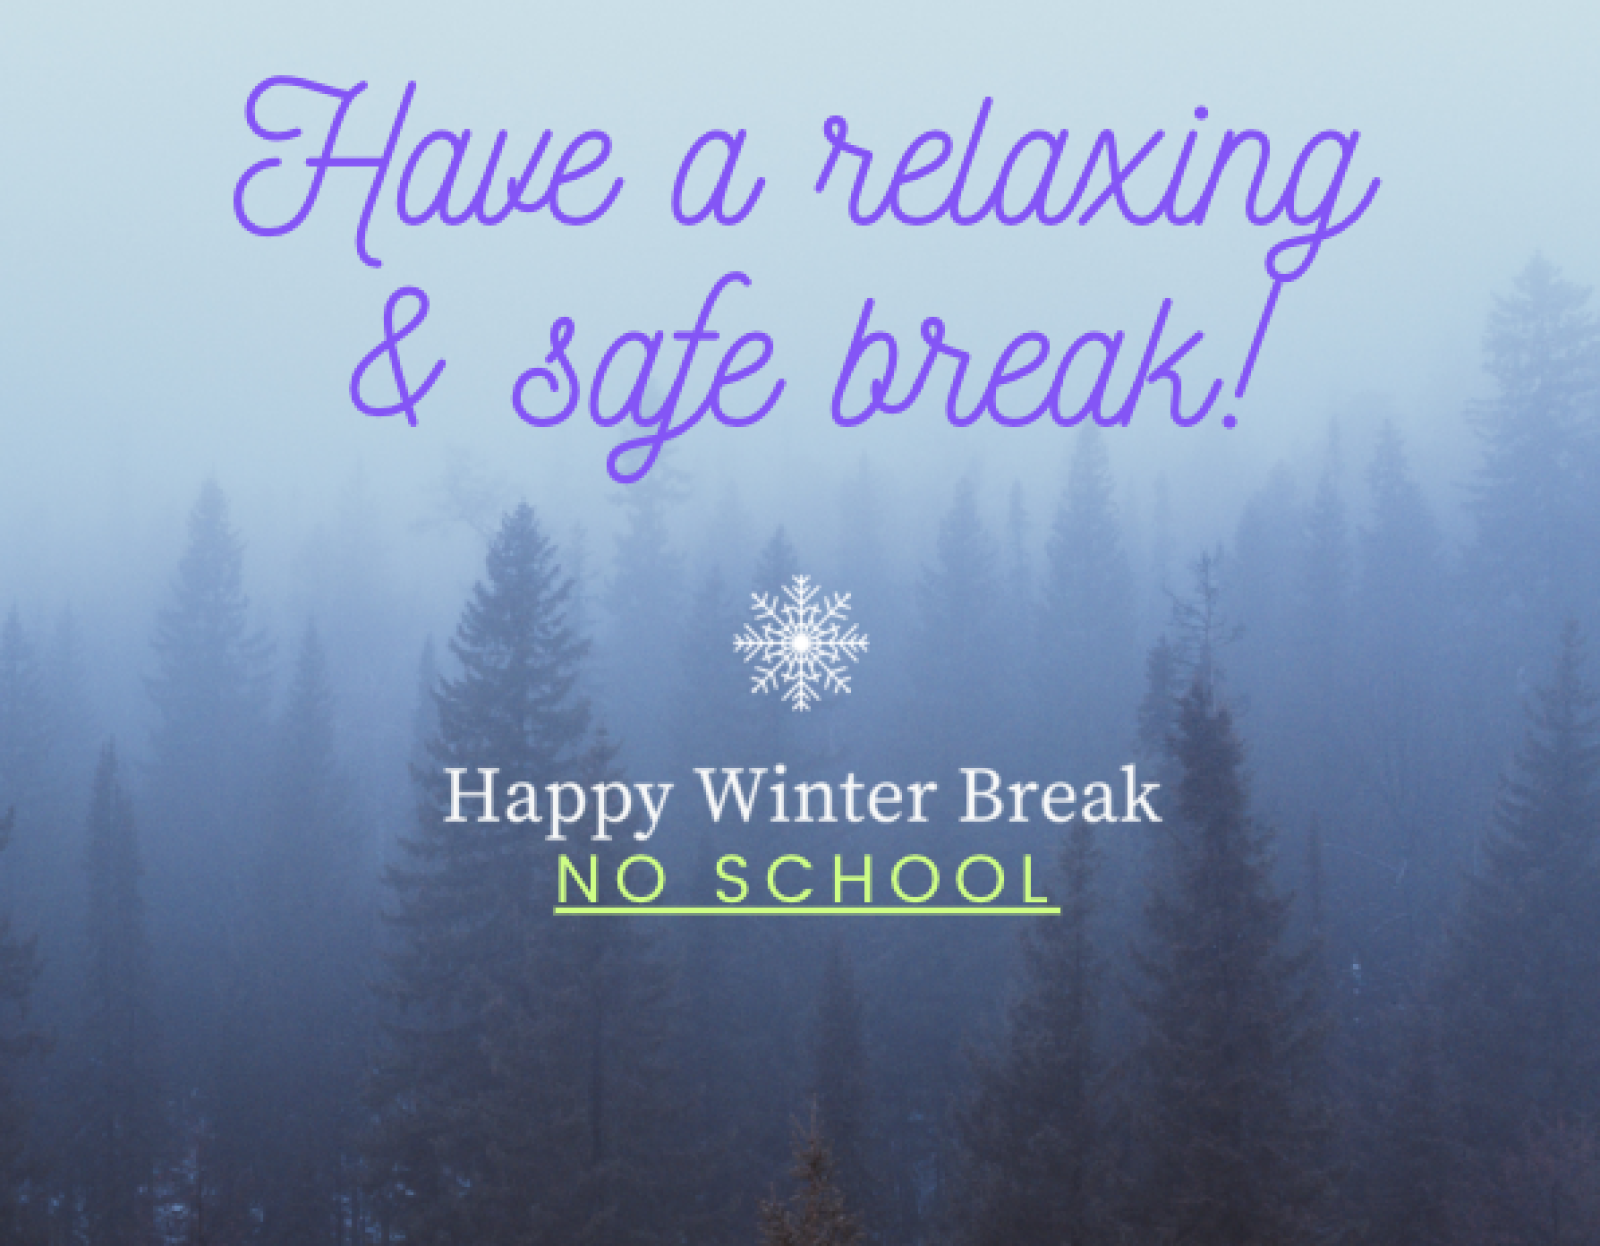 Winter Break School is Out December 25January 5 A.R. MacNeill